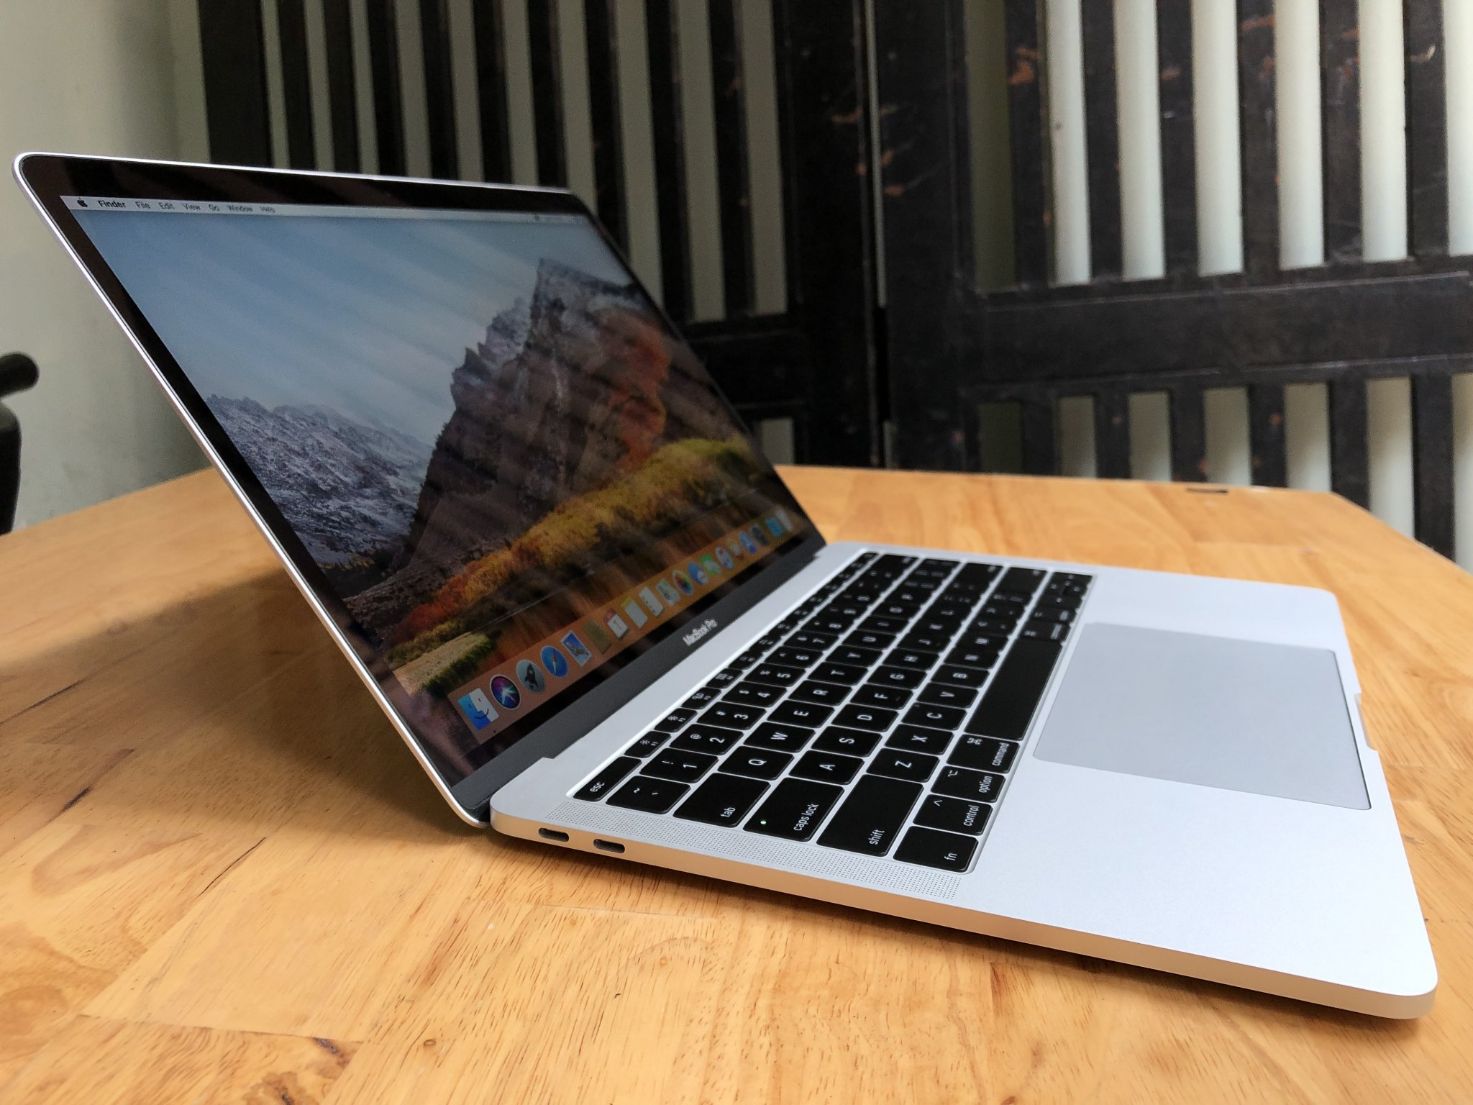 MPXY2 cũng là một sự lựa chọn khác nếu bạn đang tìm kiếm các dòng MacBook Pro 2017 cũ 13 inch với màu bạc sang trọng